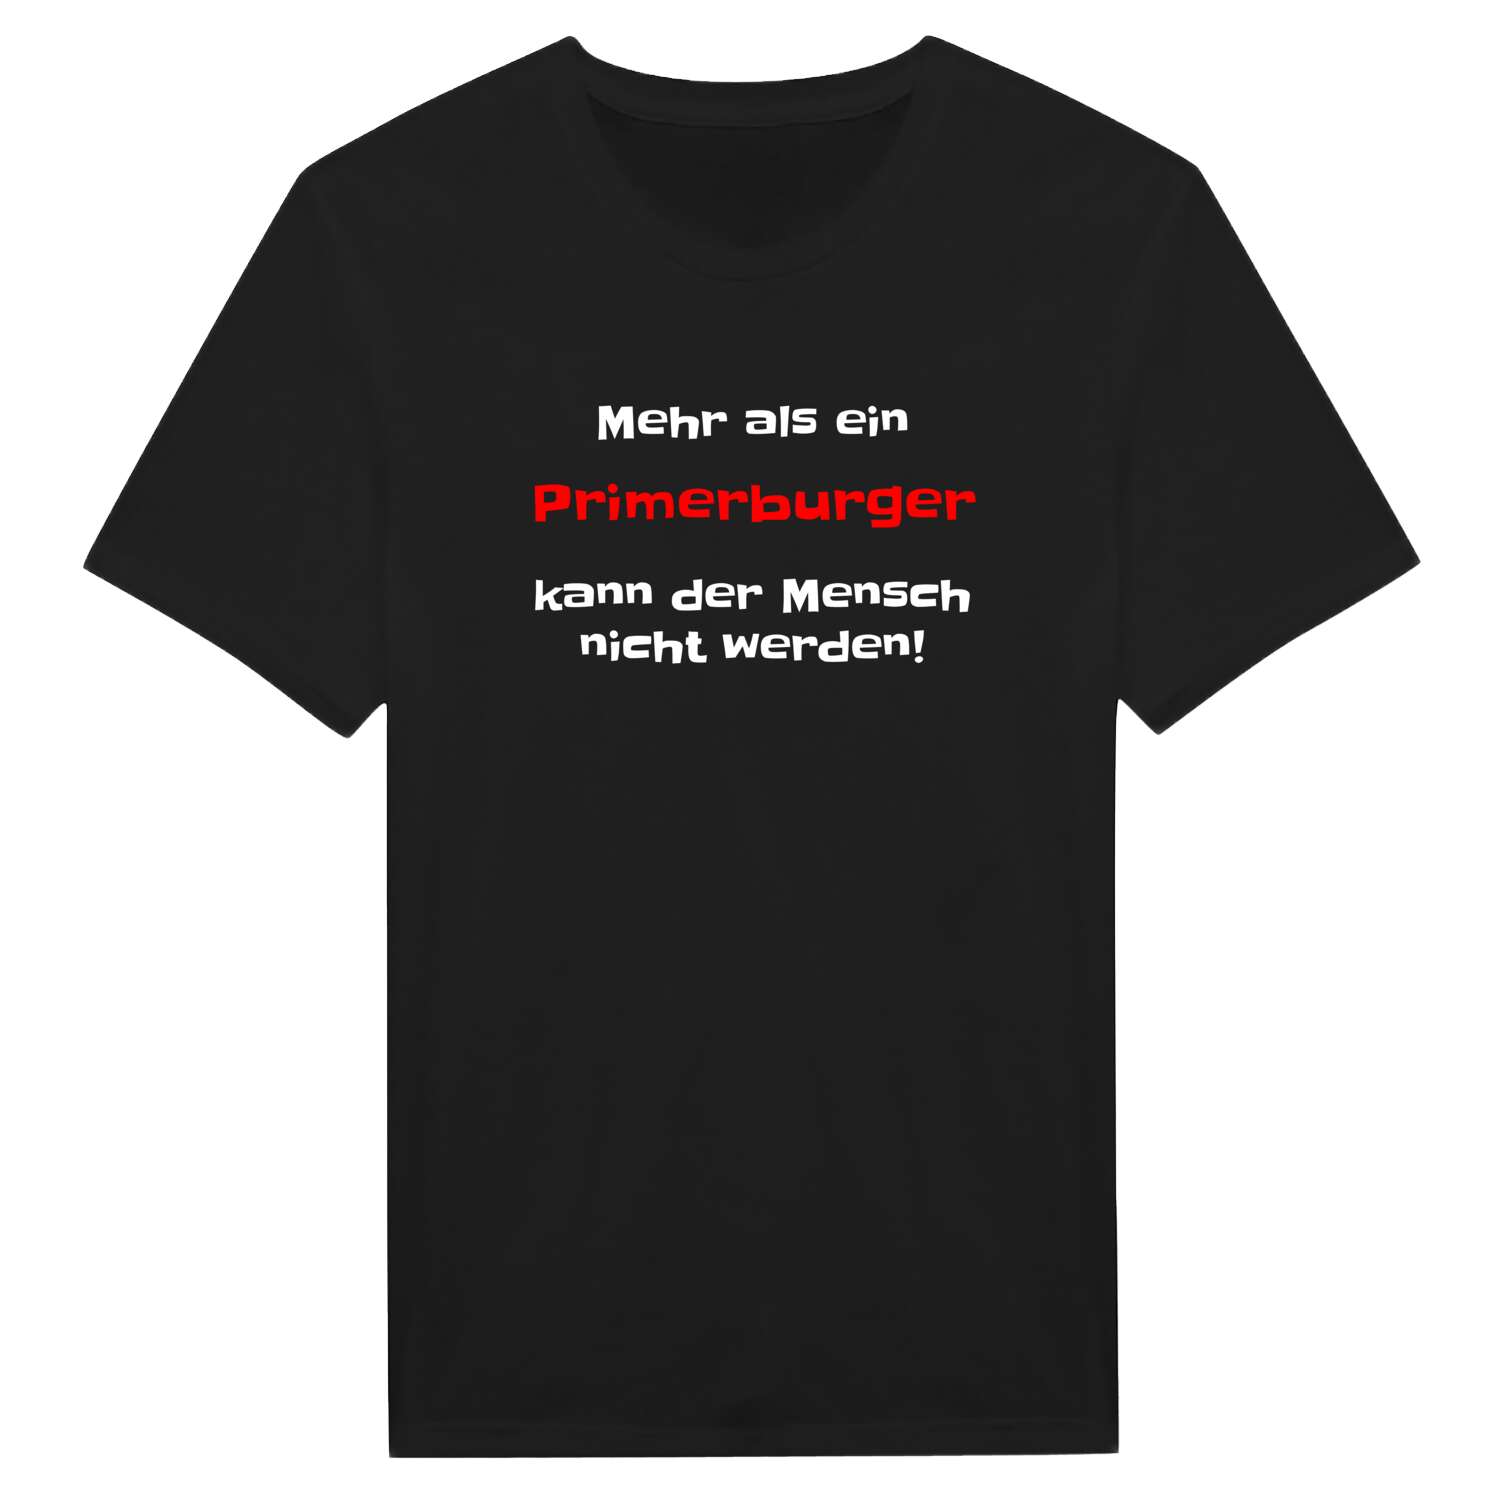 Primerburg T-Shirt »Mehr als ein«